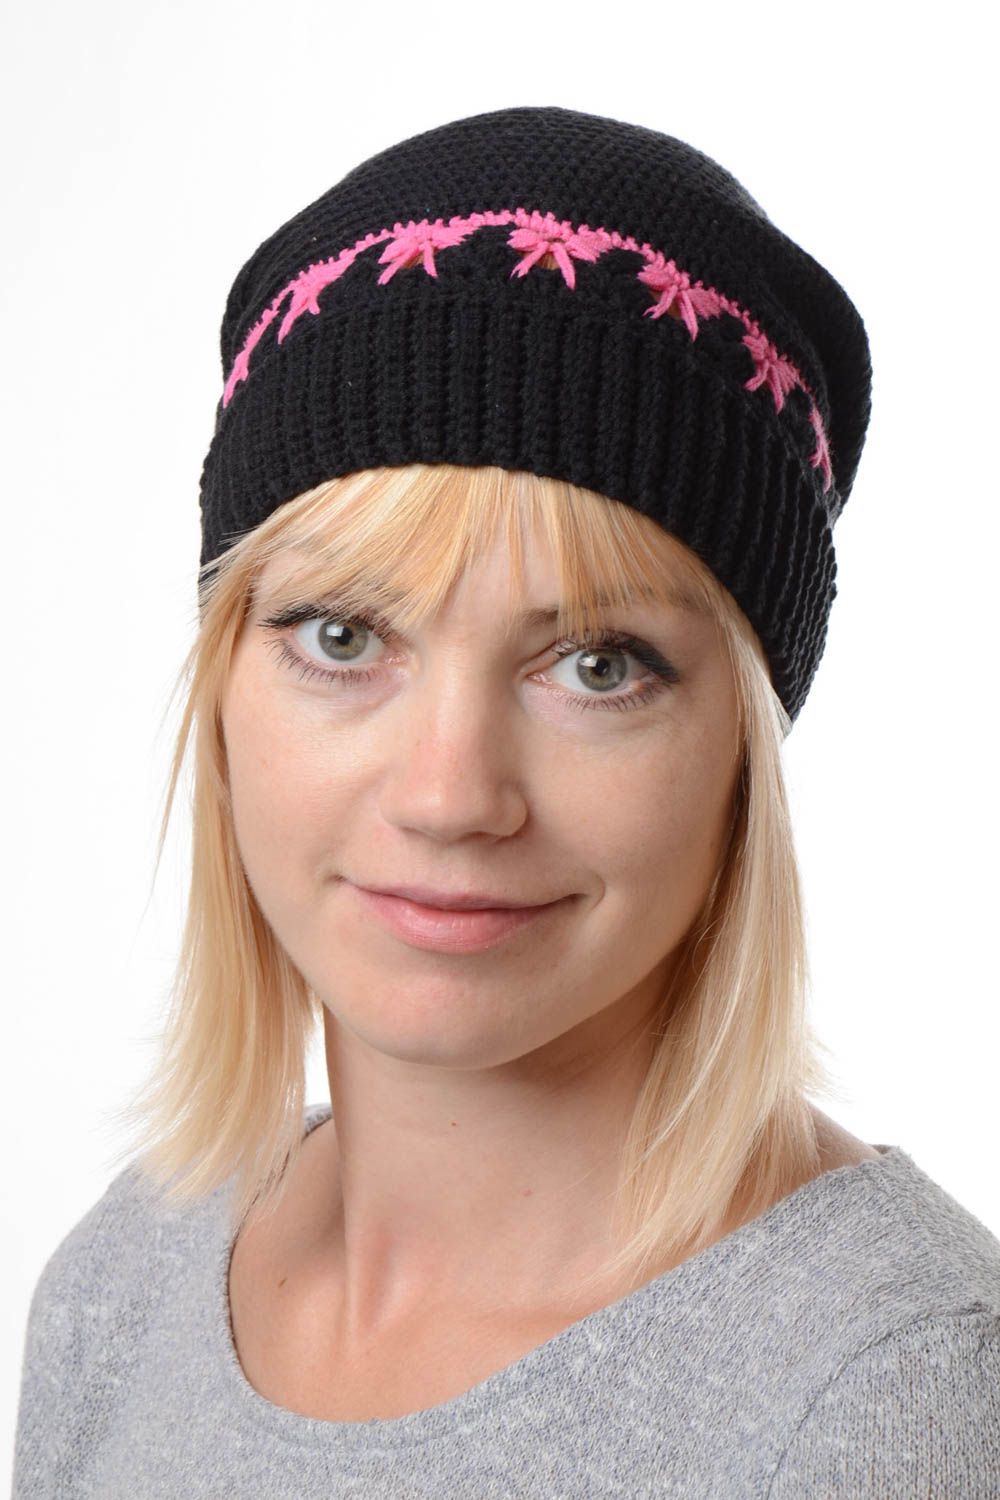 Handmade hat designer hat warm hat unusual beanie crocheted hat gift for women photo 1